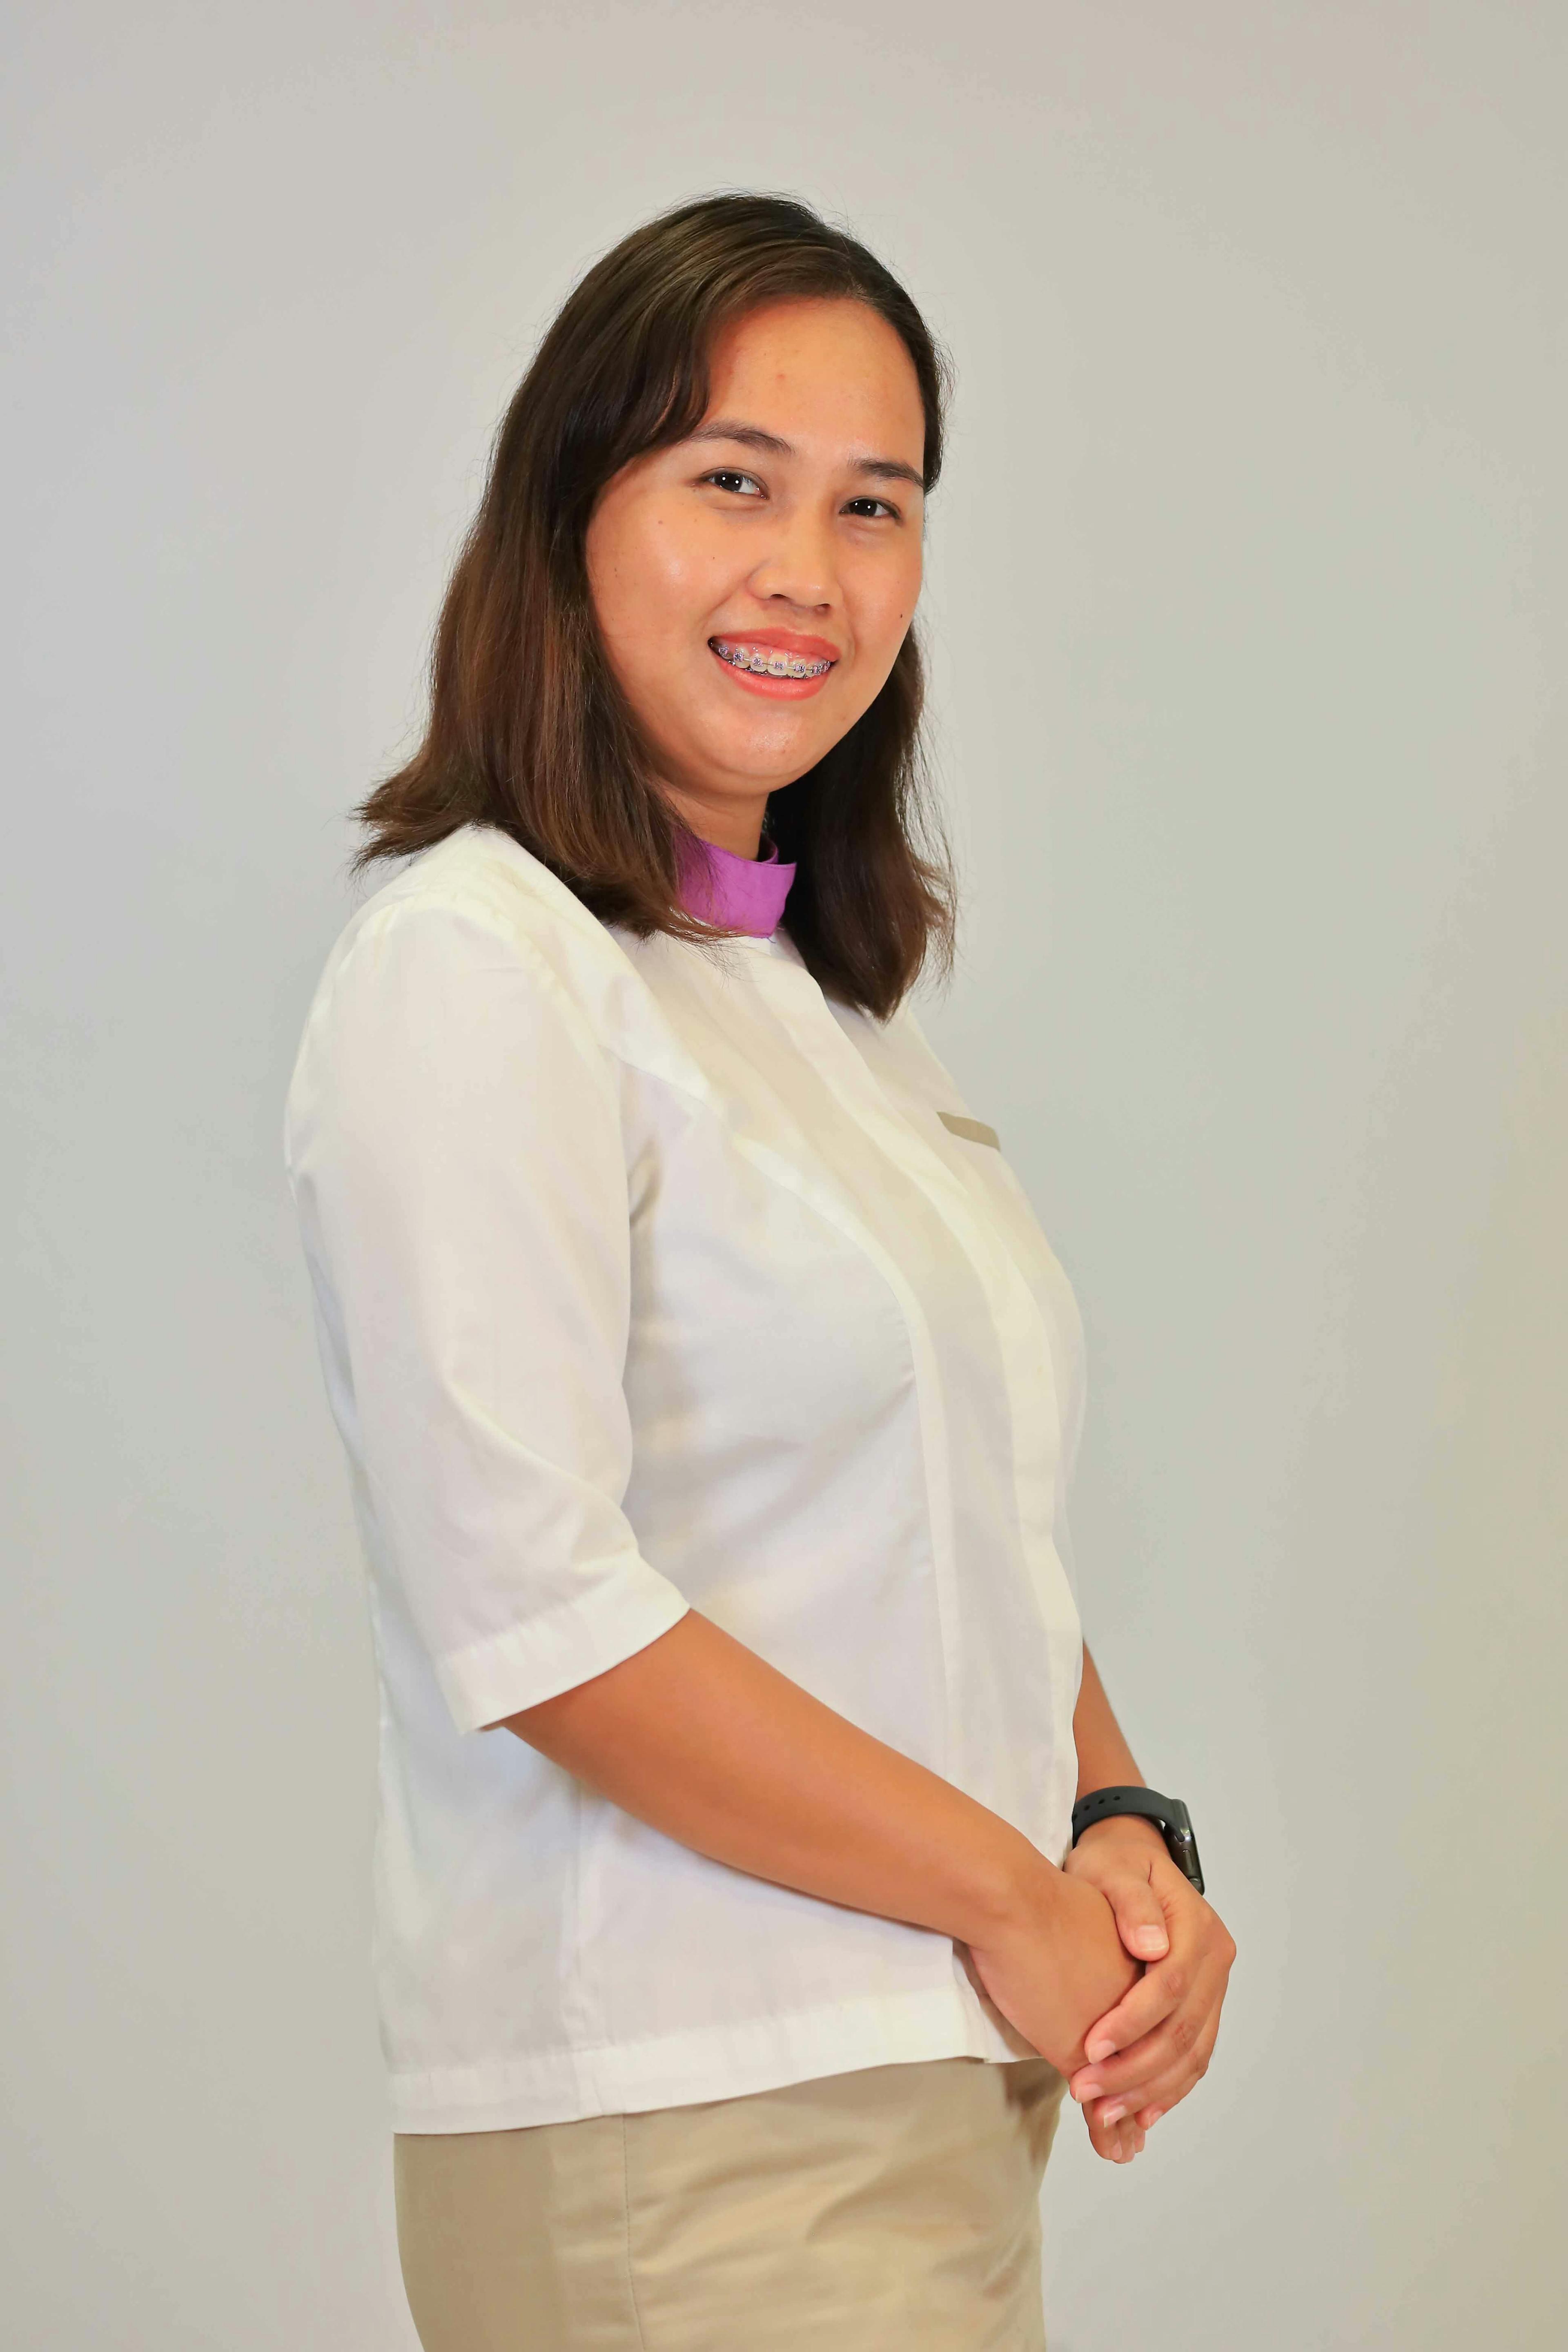 Teacher Izza Mae Borlagdan